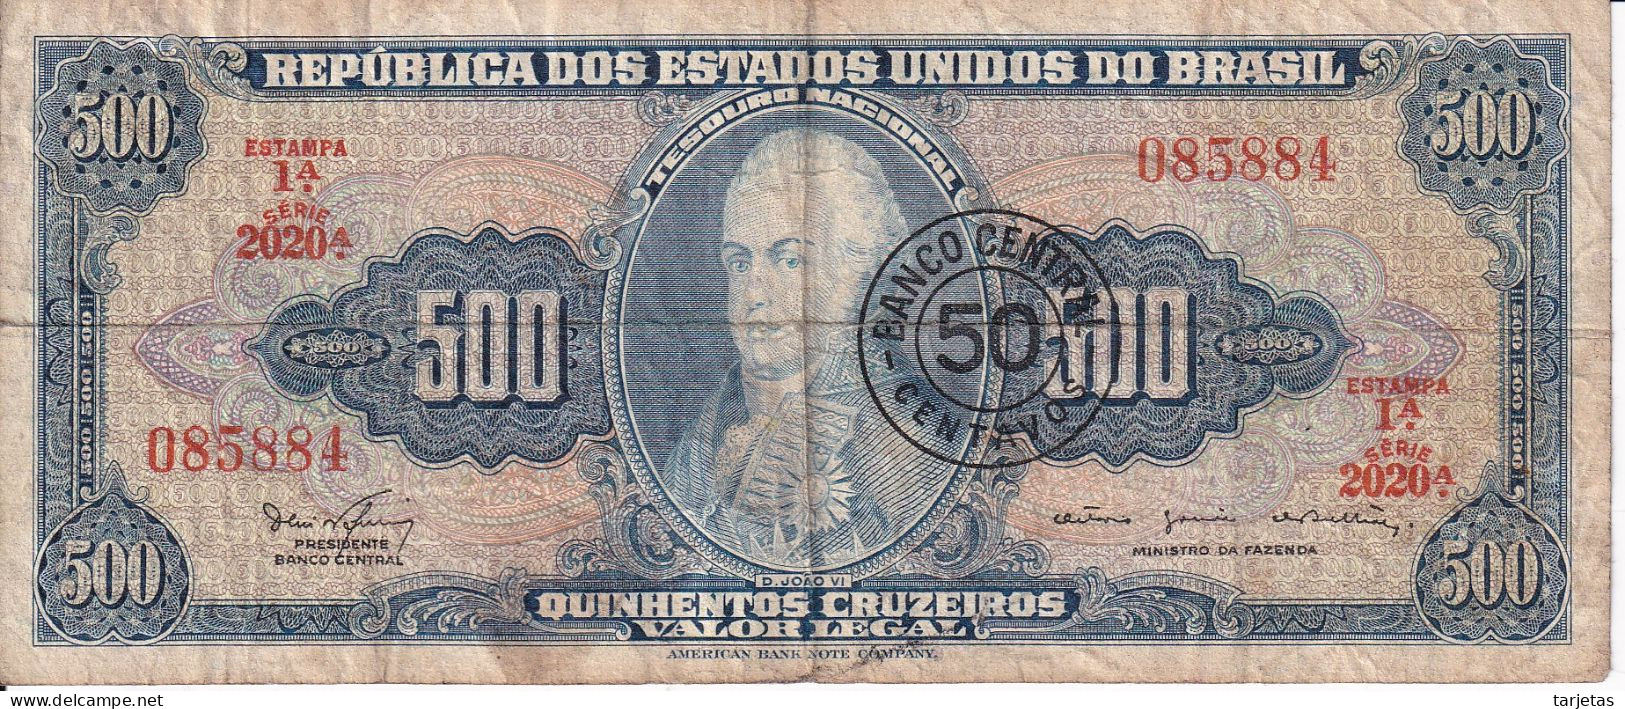 BILLETE DE BRASIL DE 500 CRUZEIROS DEL AÑO 1962 CON RESELLO DE 50 CENTAVOS (BANK NOTE) - Brasilien